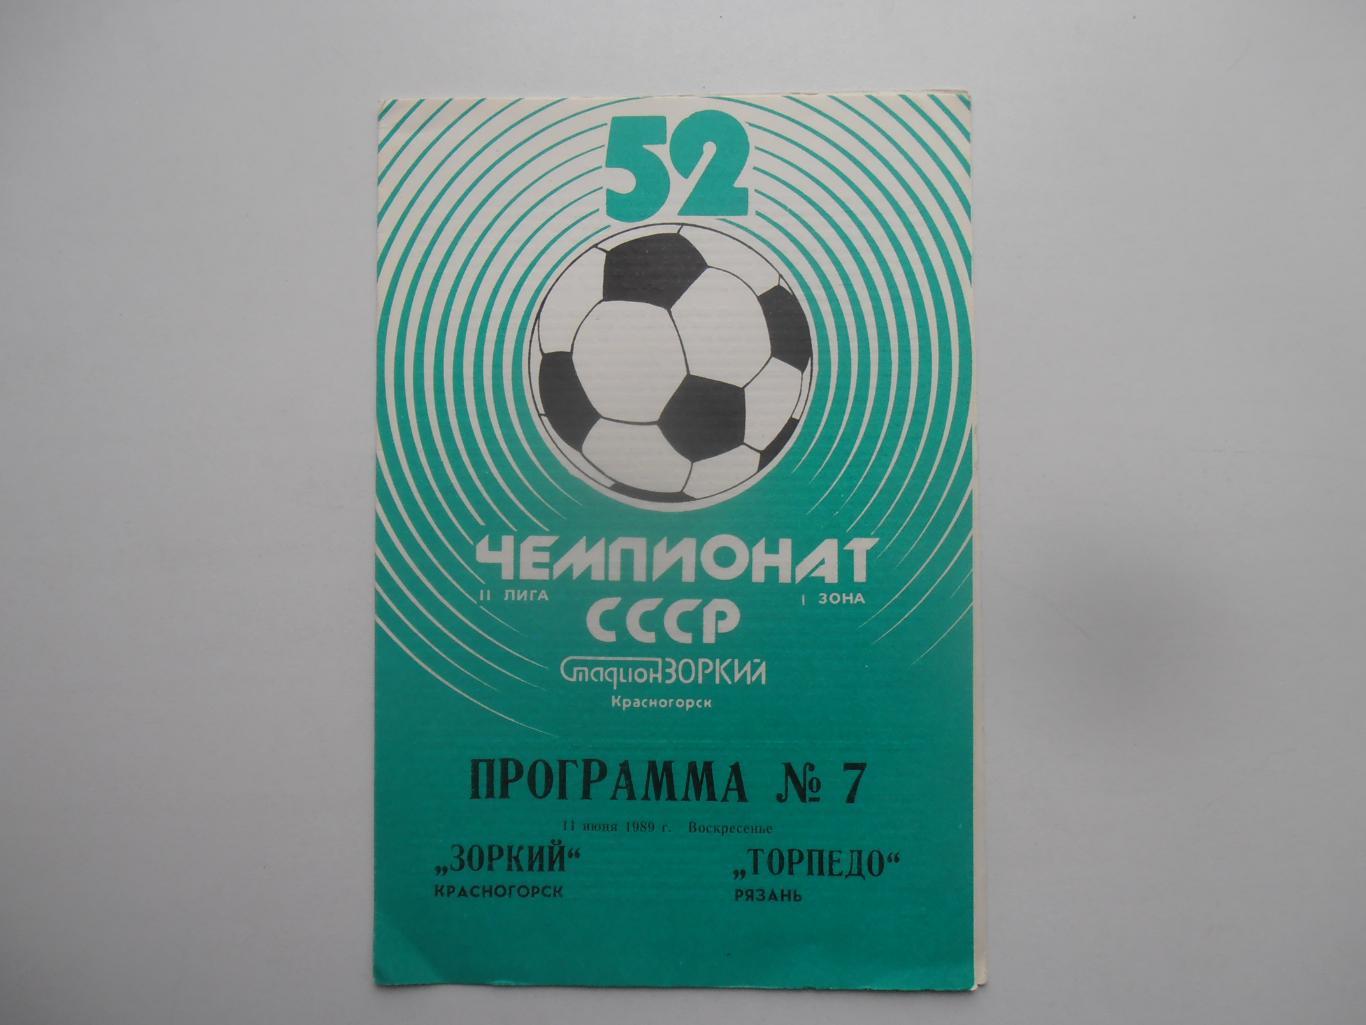 Зоркий Красногорск-Торпедо Рязань 11 июня 1989